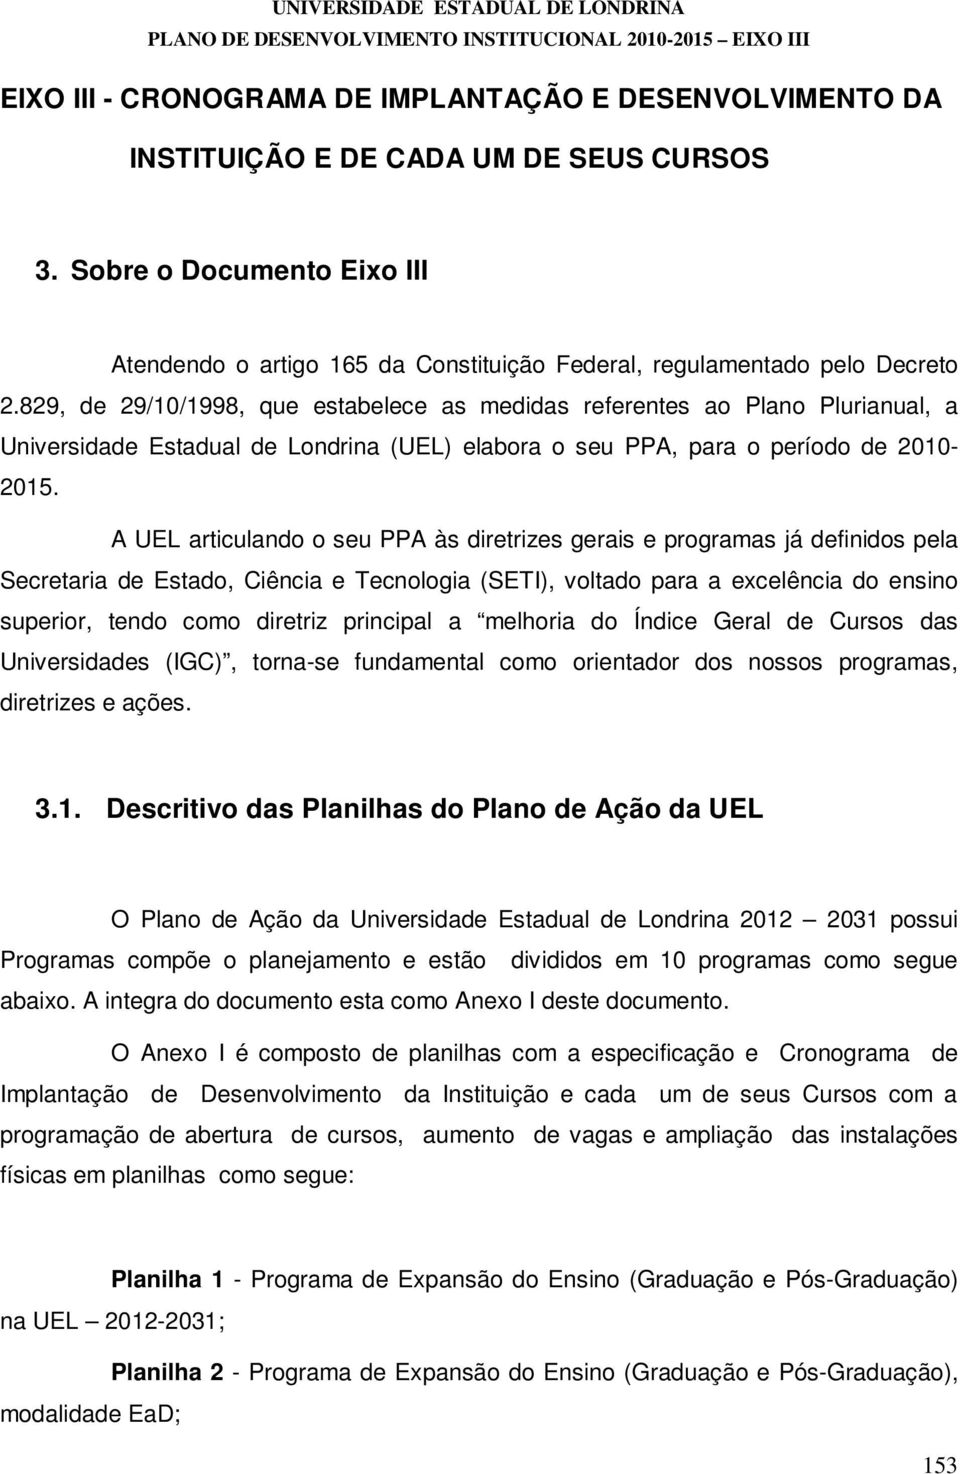 829, de 29/10/1998, que estabelece as medidas referentes ao Plano Plurianual, a Universidade Estadual de Londrina (UEL) elabora o seu PPA, para o período de 2010-2015.